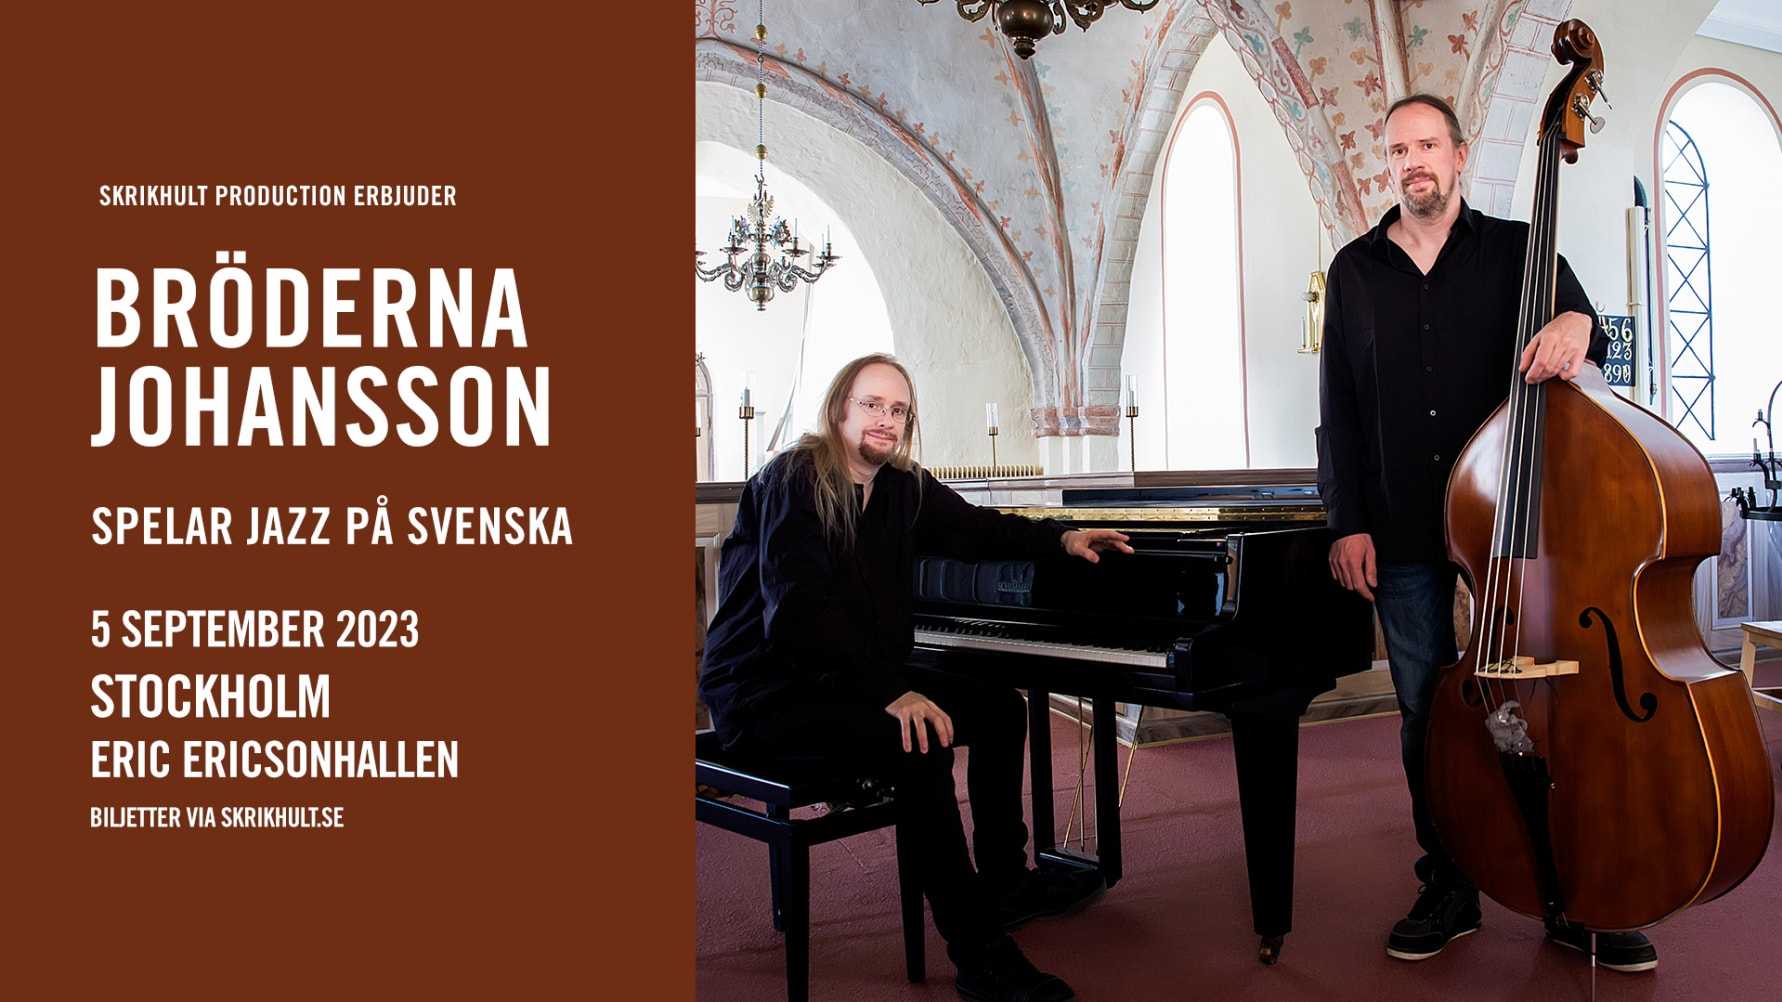 TURNÉ. Bröderna Johansson på sverigeturné med Jazz på svenska - Stockholmsdatum adderat 